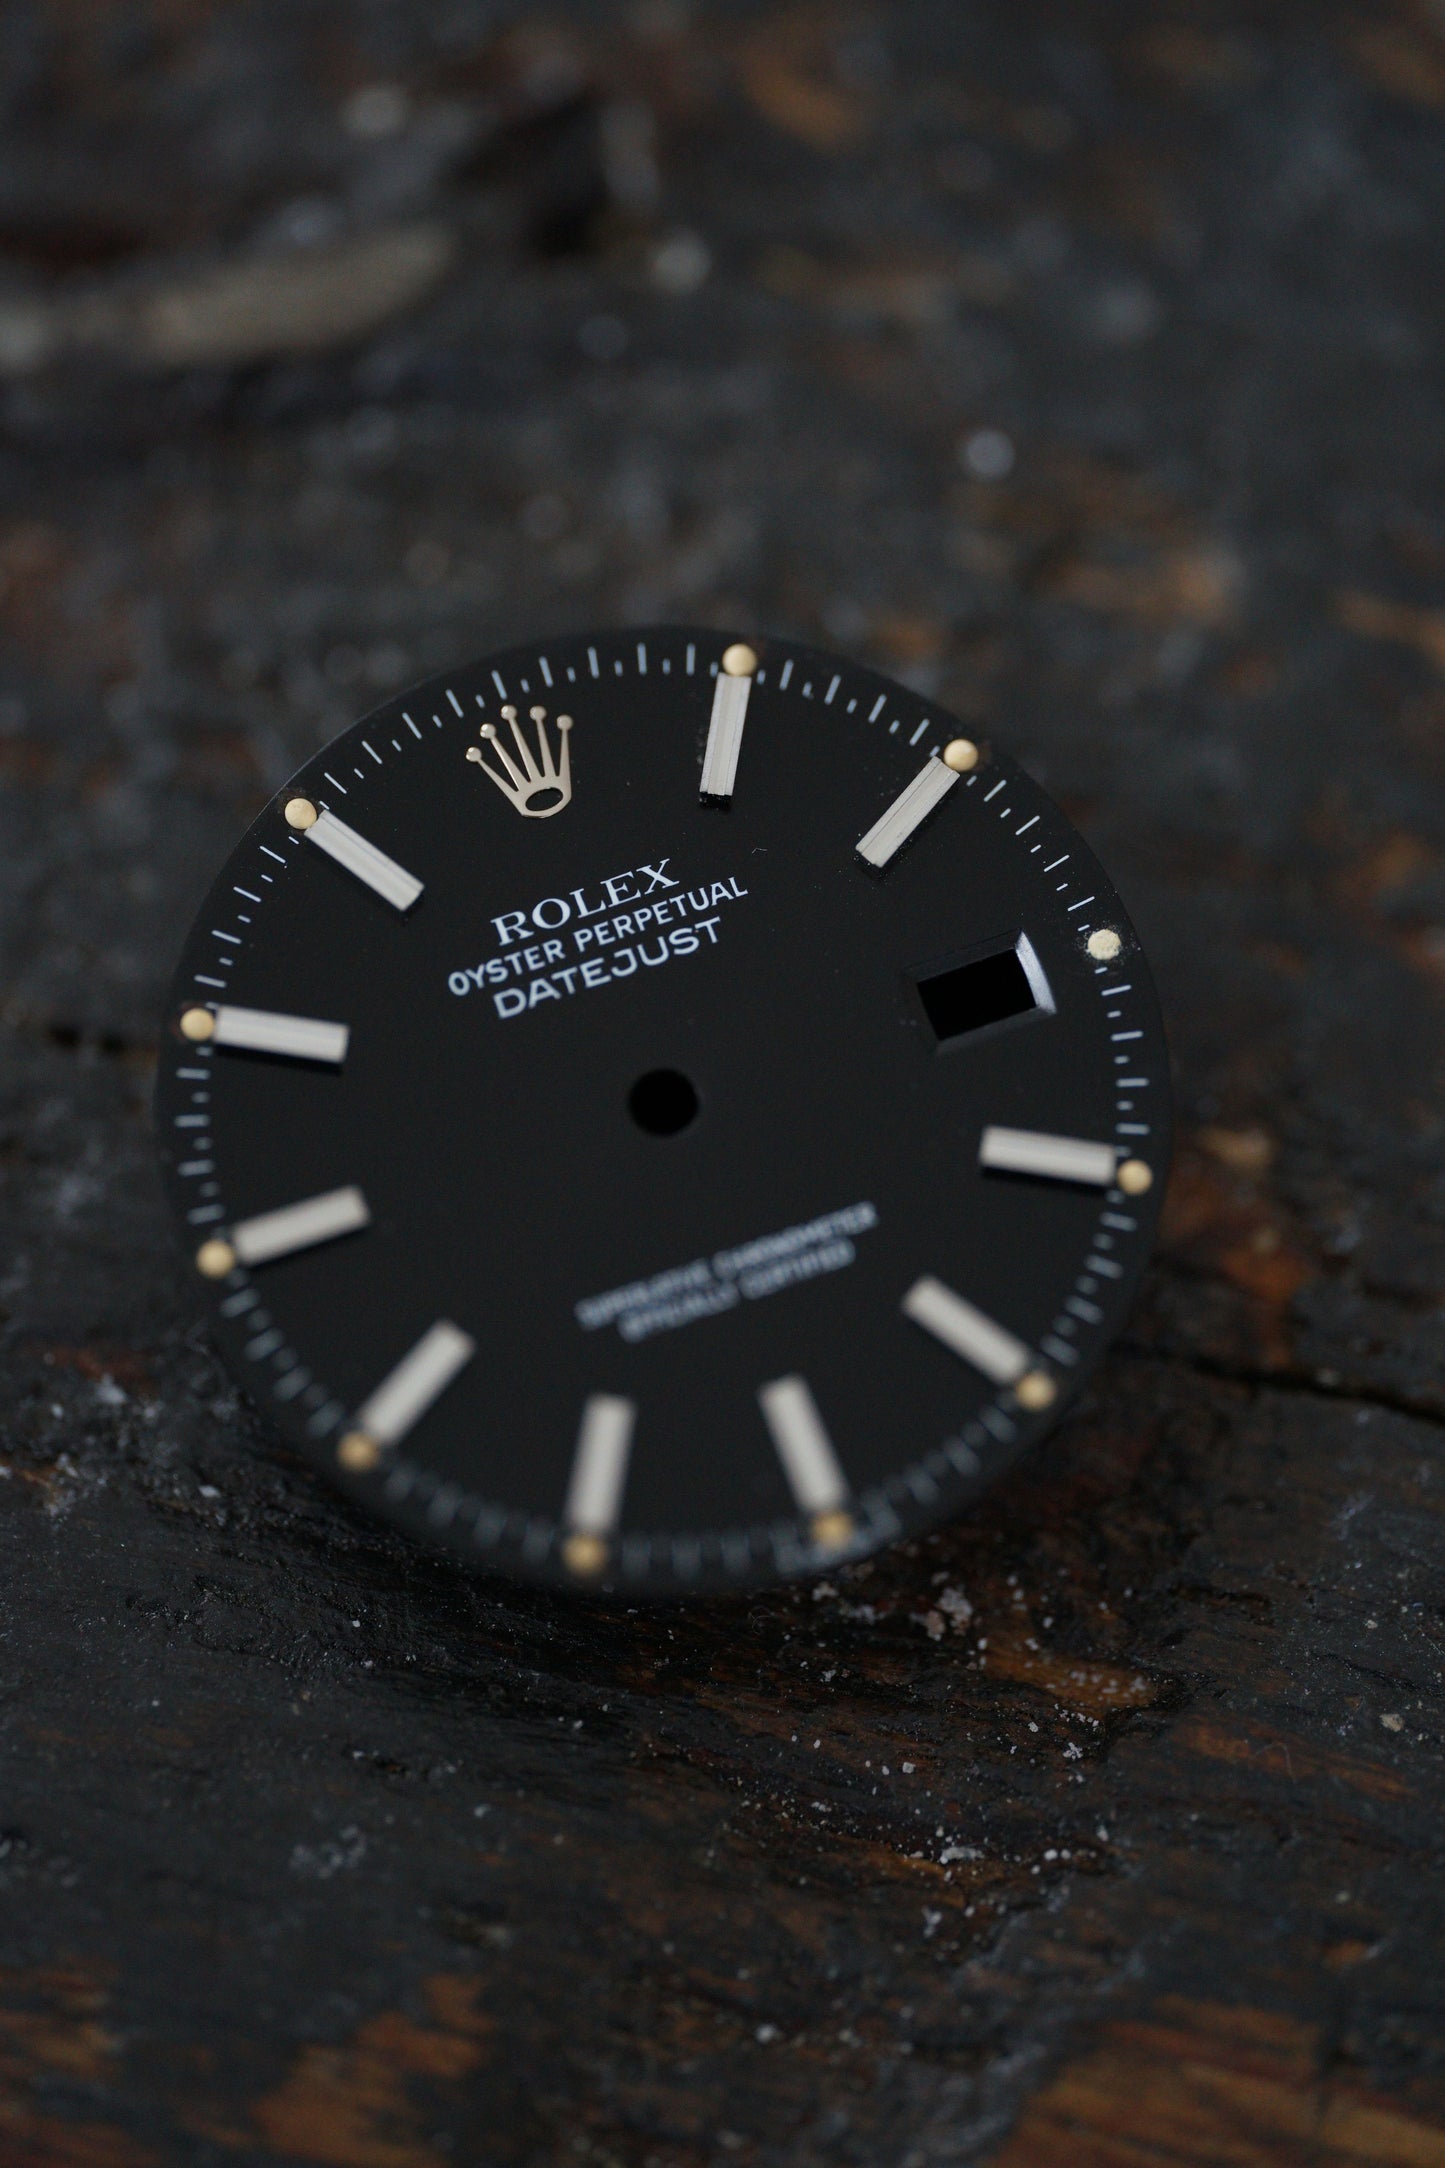 Rolex black dial for OP Datejust 36 mm patina tritium rare Index